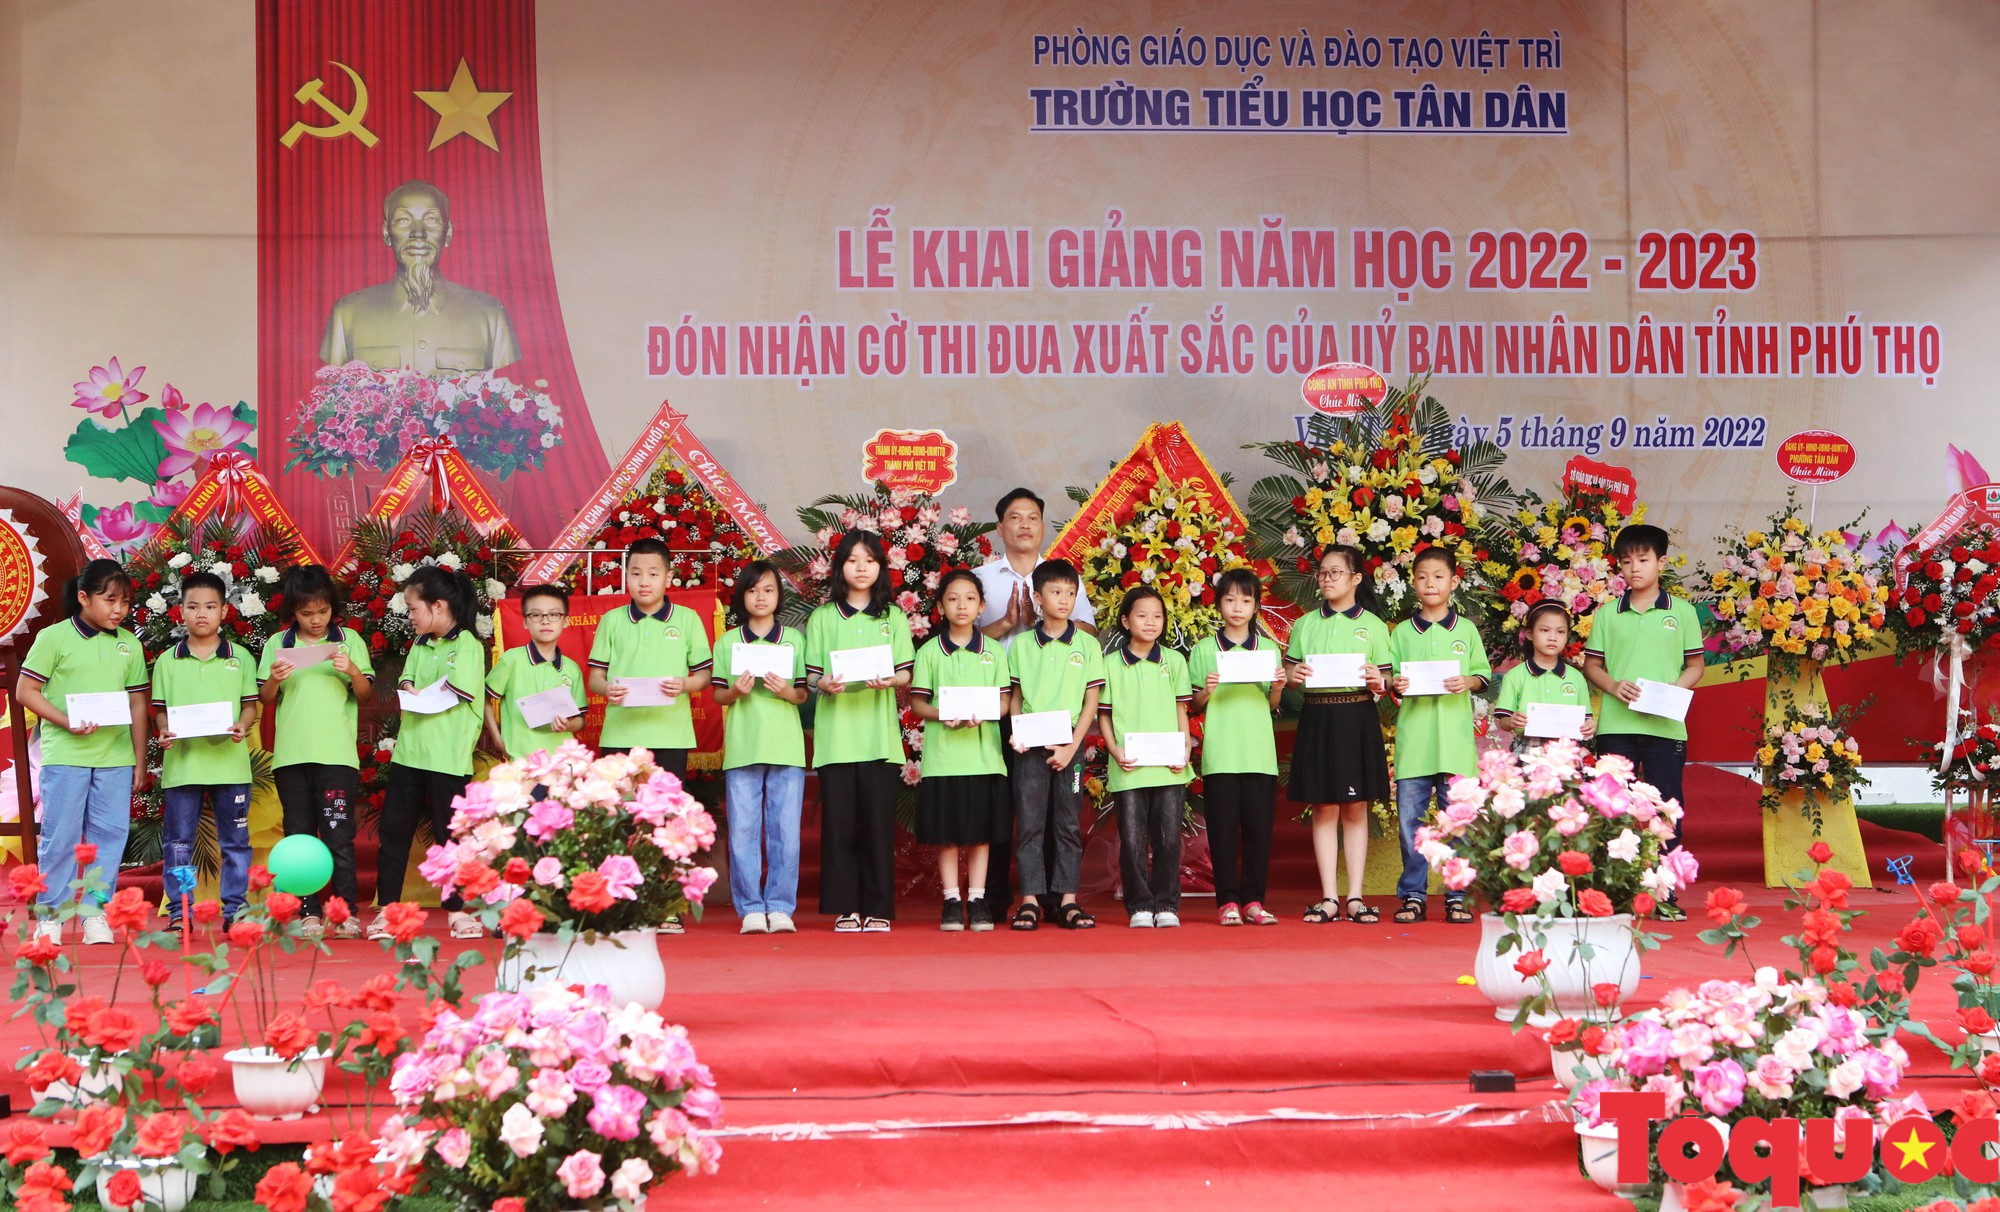 Trường tiểu học Tân Dân khai giảng năm học mới, đón nhận Cờ thi đua của UBND tỉnh Phú Thọ - Ảnh 15.